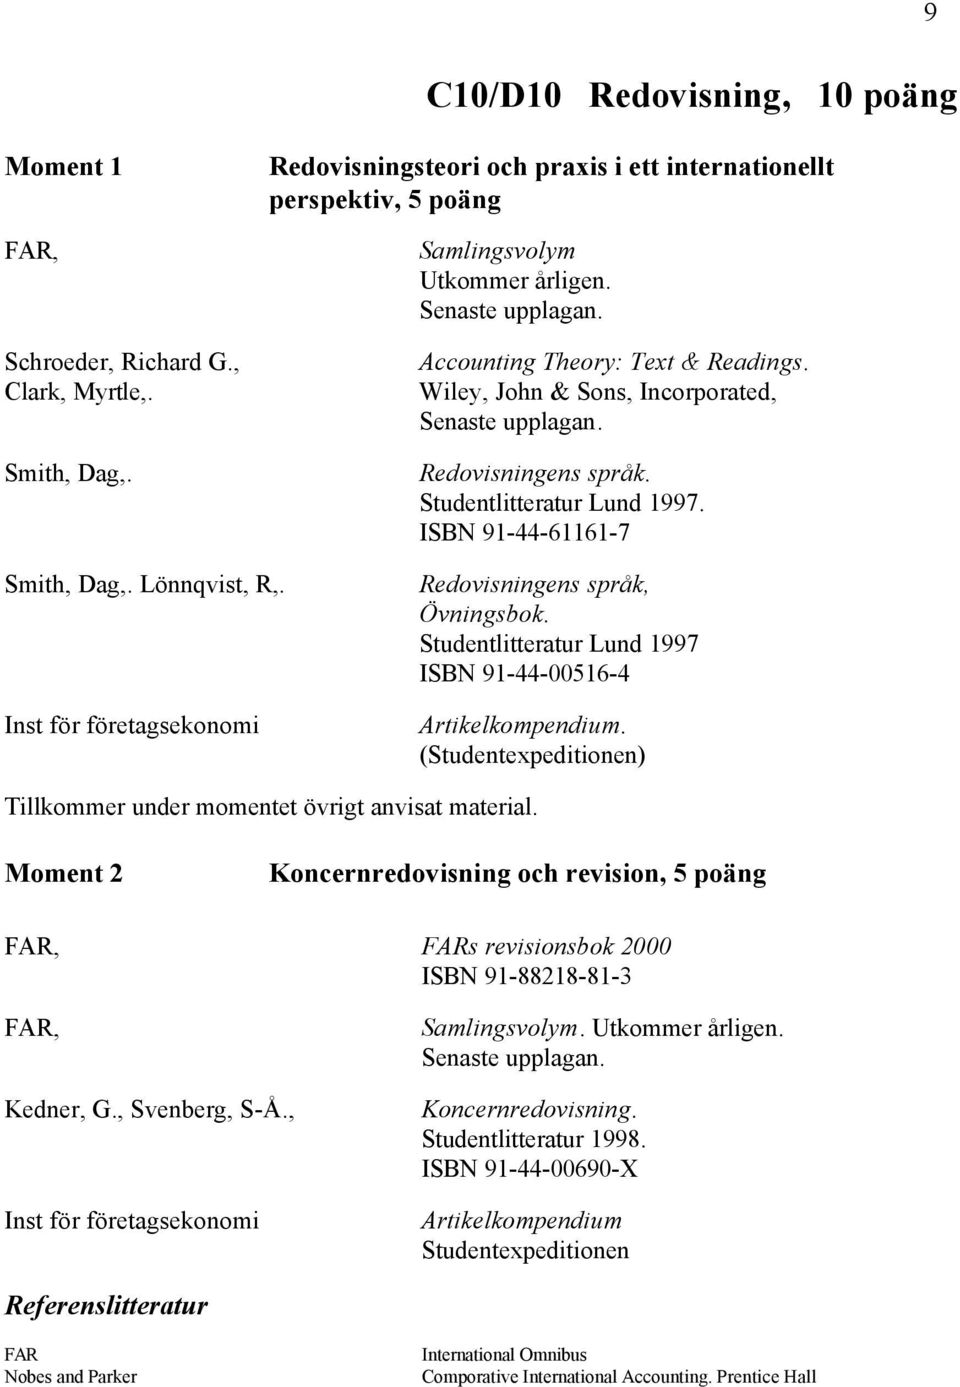 Lönnqvist, R,. Inst för företagsekonomi Redovisningens språk, Övningsbok. Studentlitteratur Lund 1997 ISBN 91-44-00516-4 Artikelkompendium.